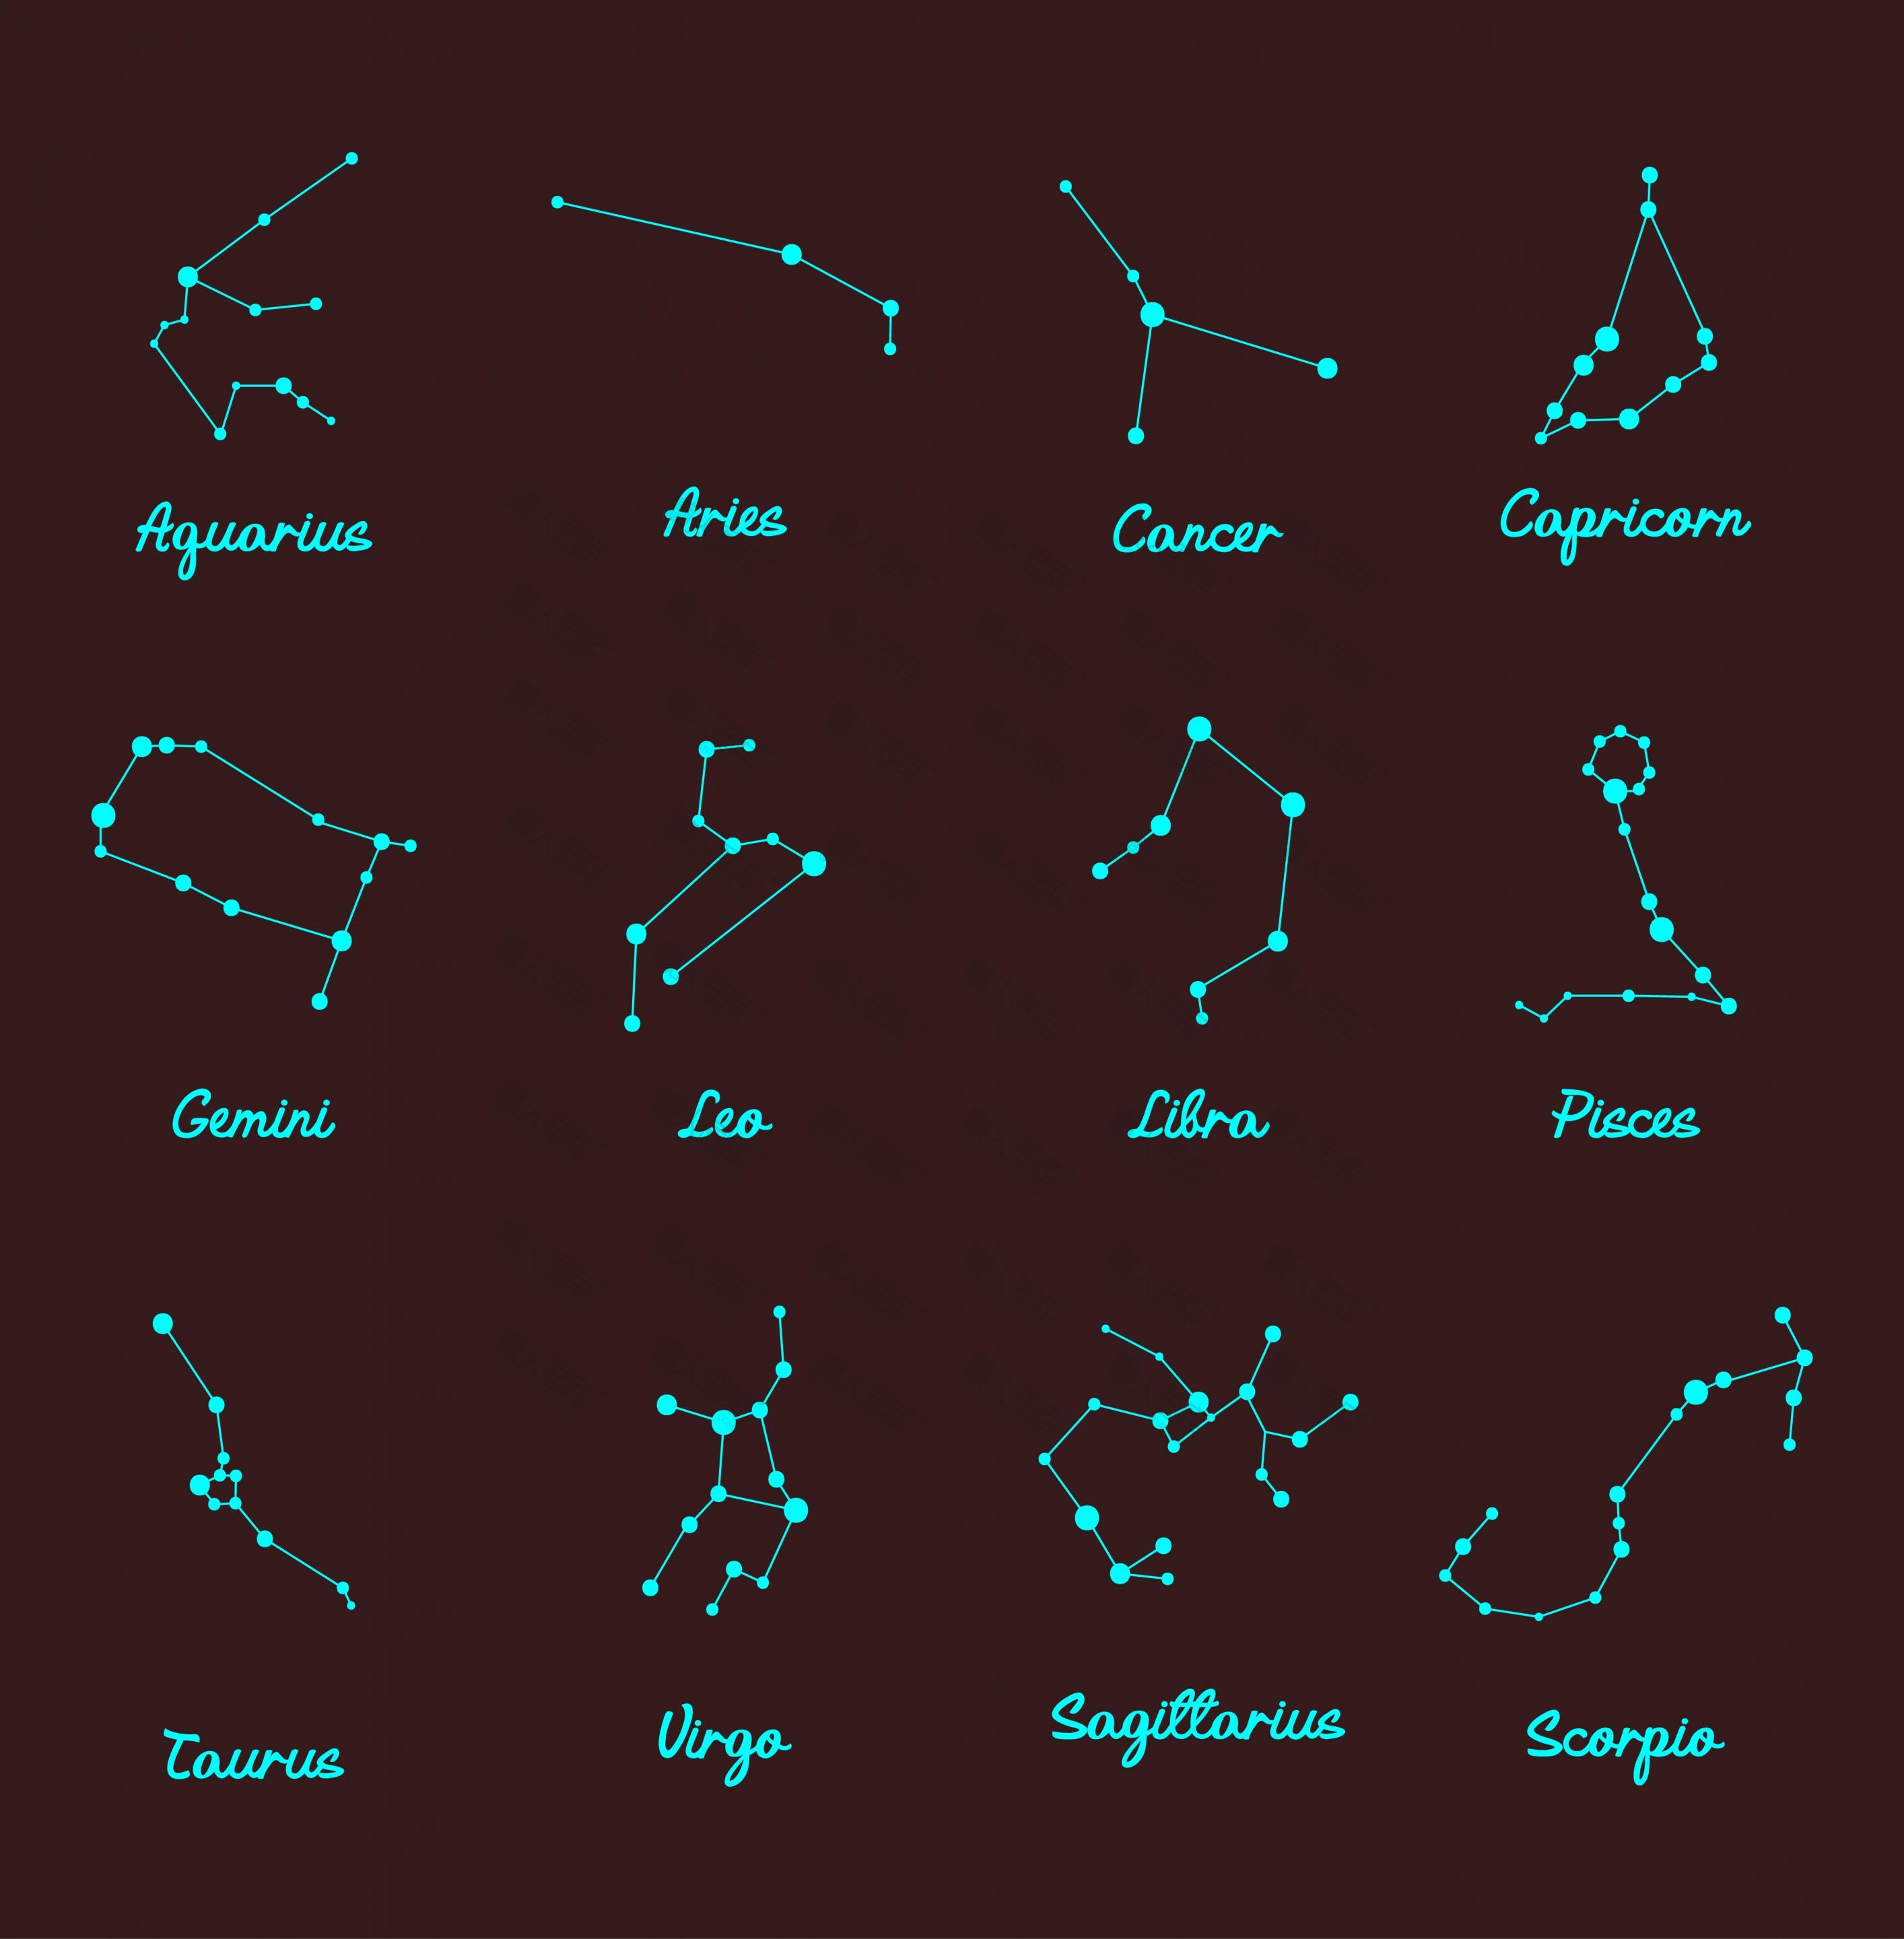 十二星座连线图 简易十二星座连线图星图下载 懒人图库